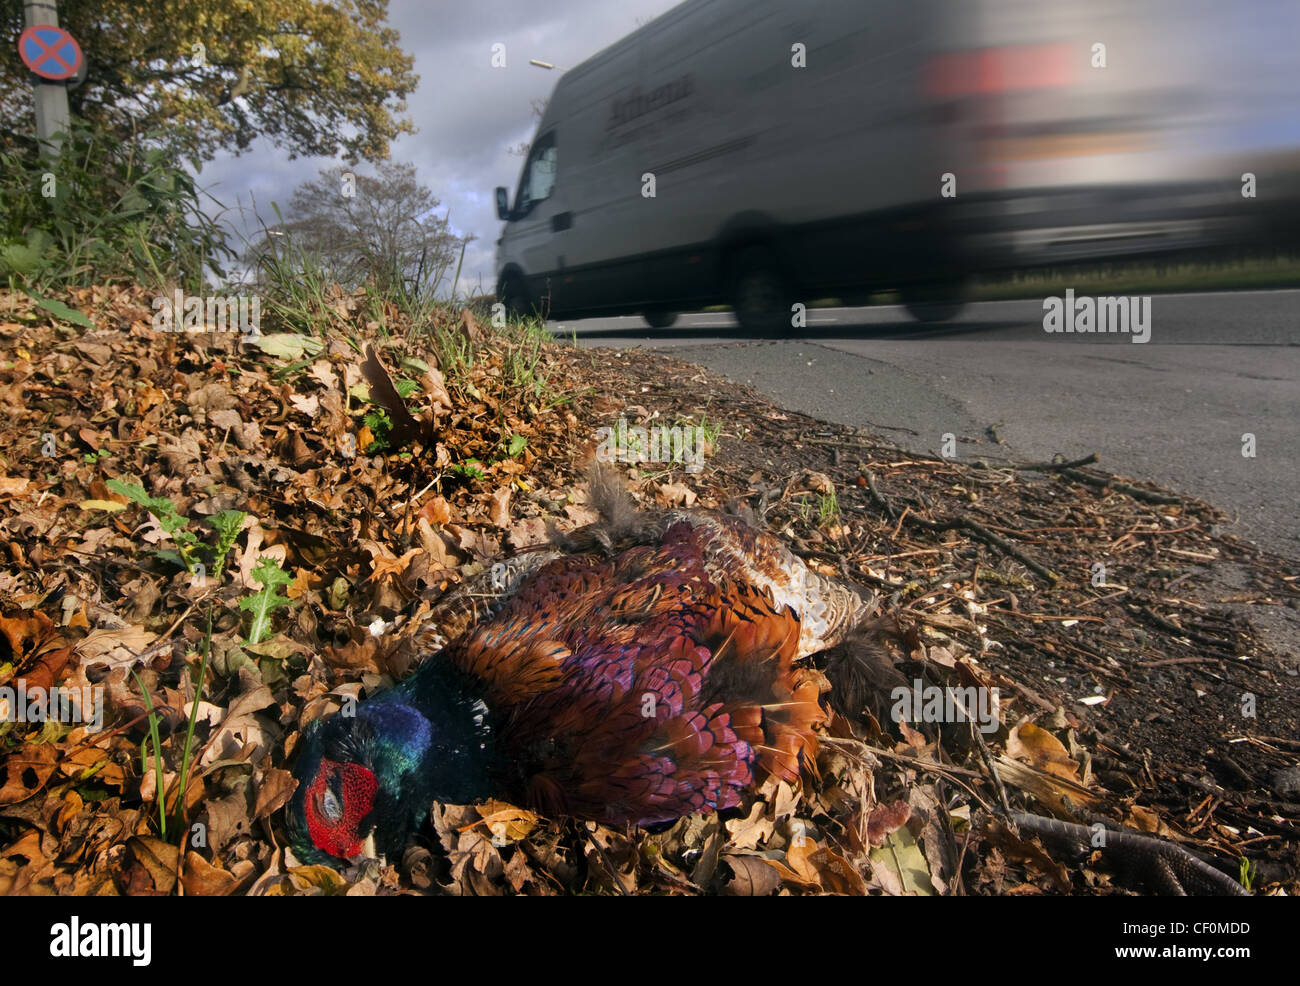 Roadkill - ein Fasan durch einen vorbeifahrenden weißen van, A556 Chester zu Manchester Straße getötet. Cheshire, England, GB, Großbritannien Stockfoto